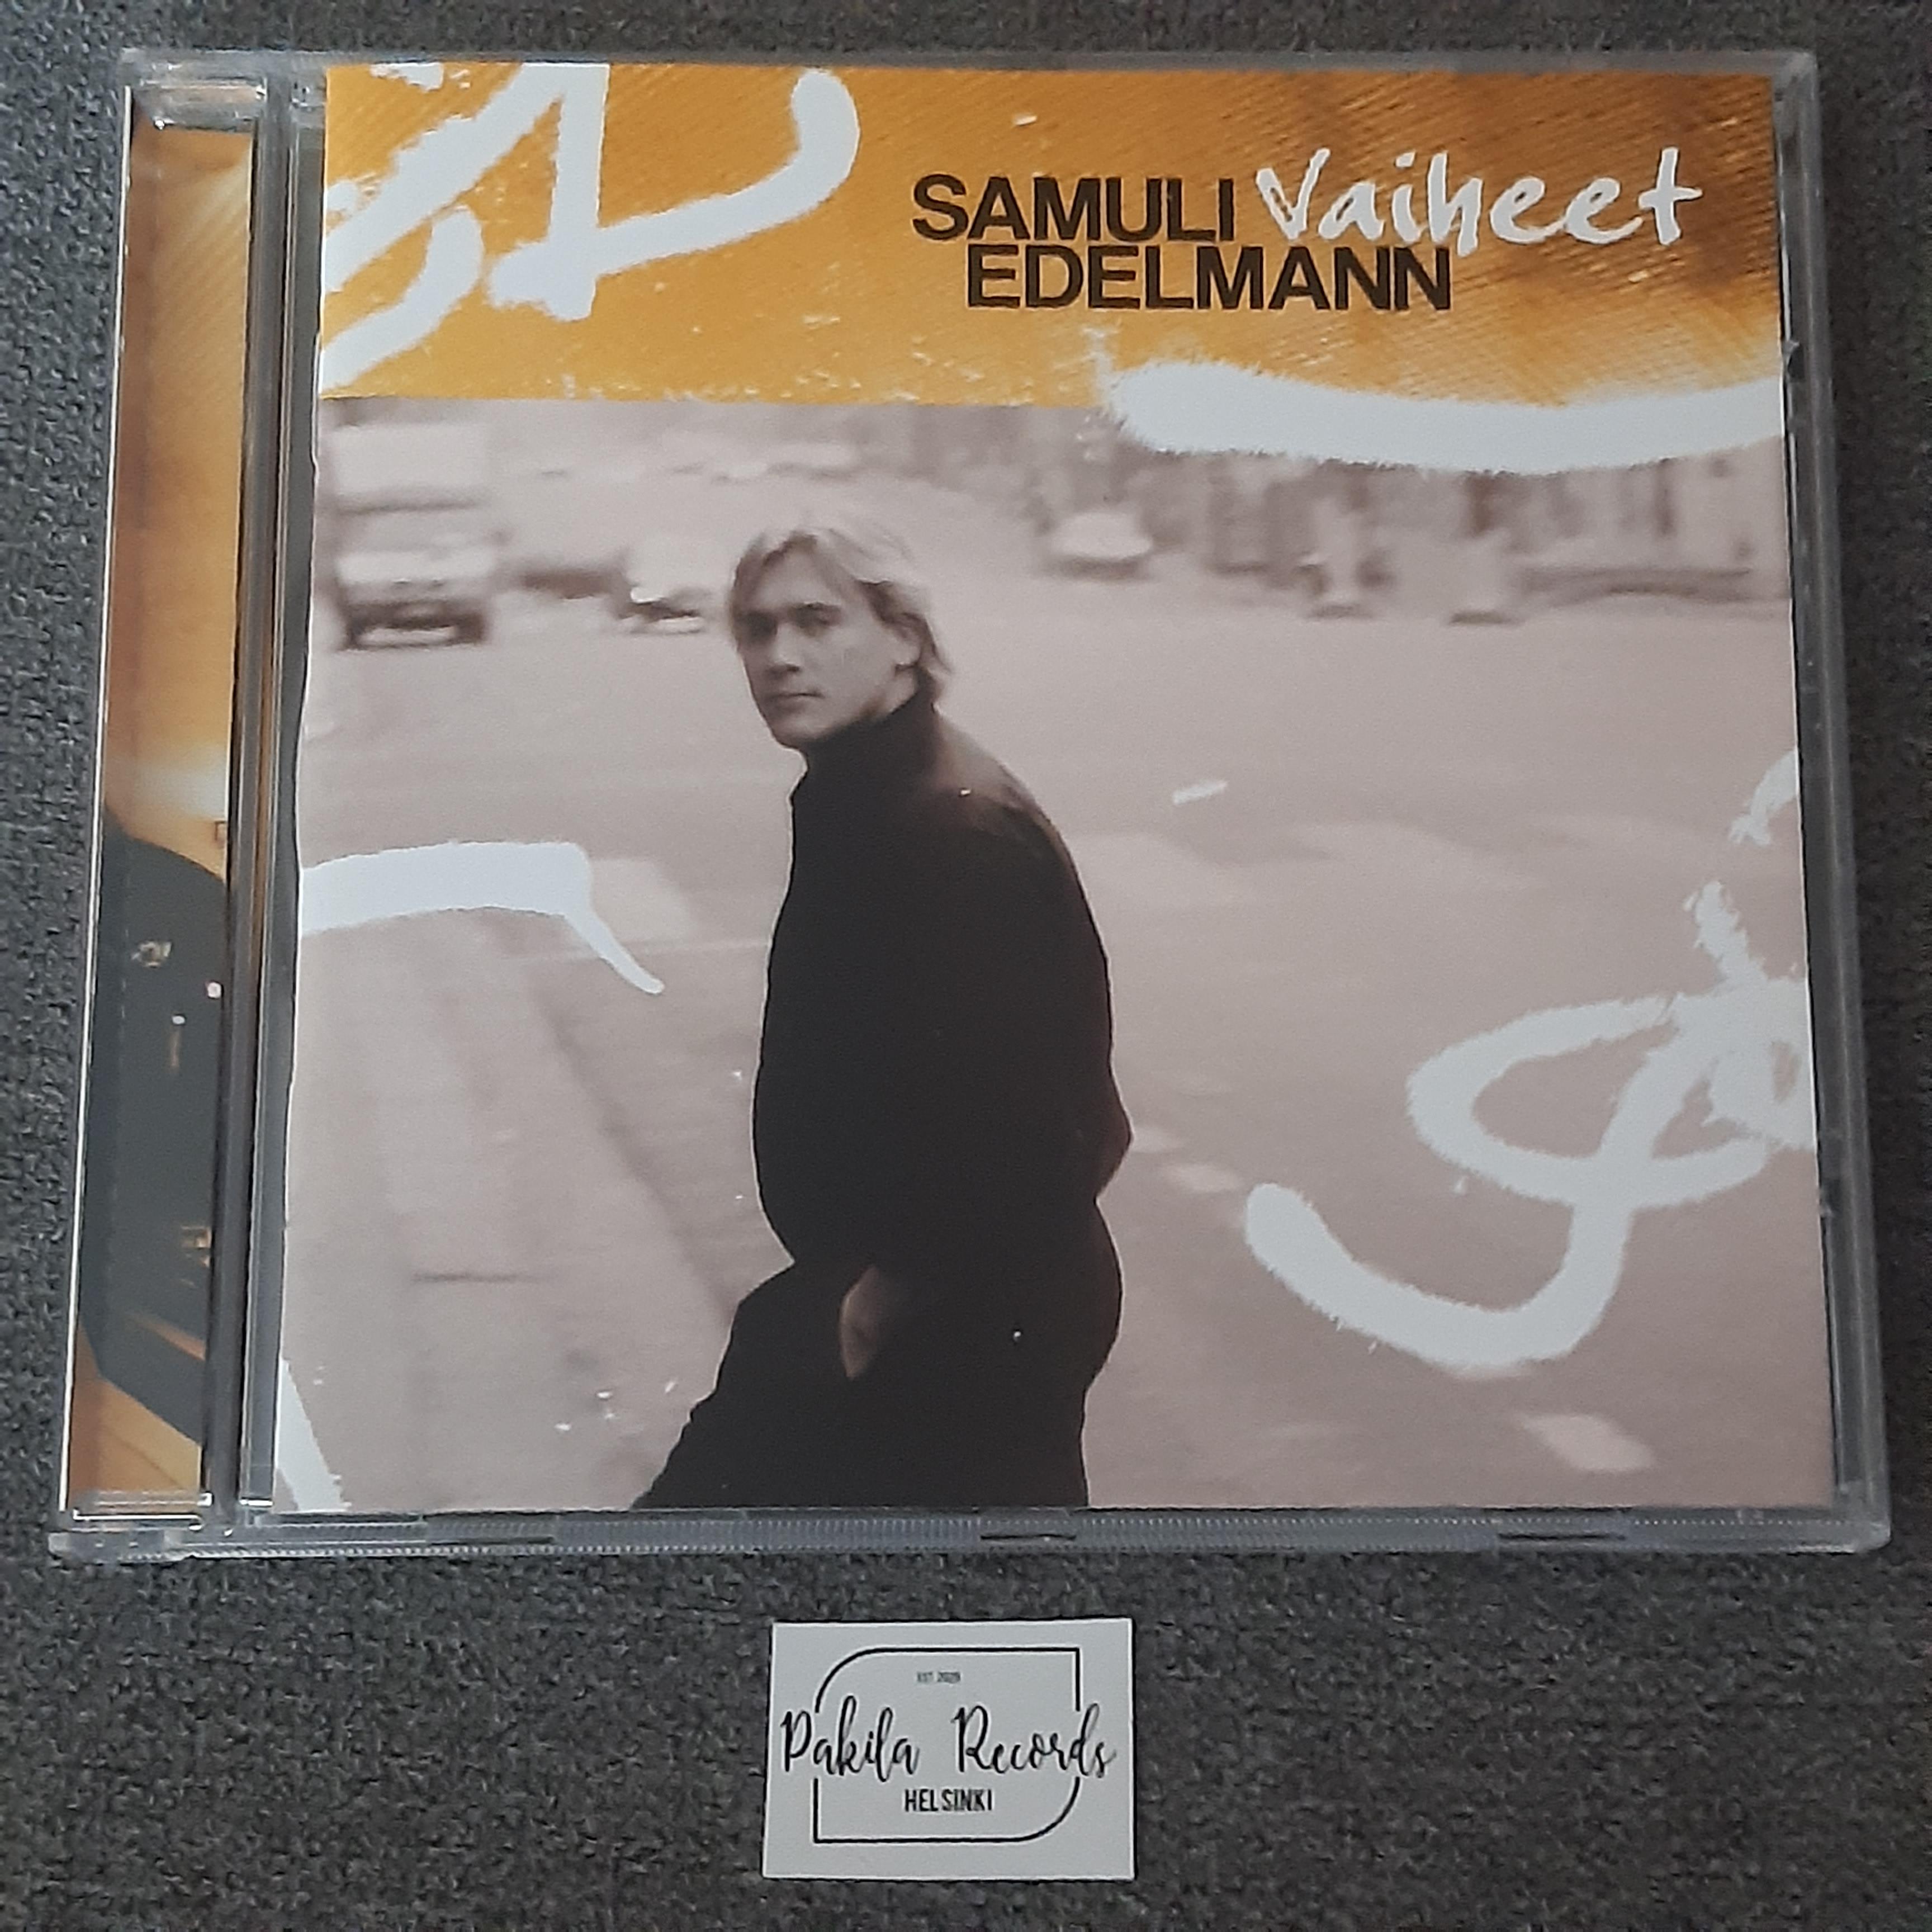 Samuli Edelmann - Vaiheet - CD (käytetty)